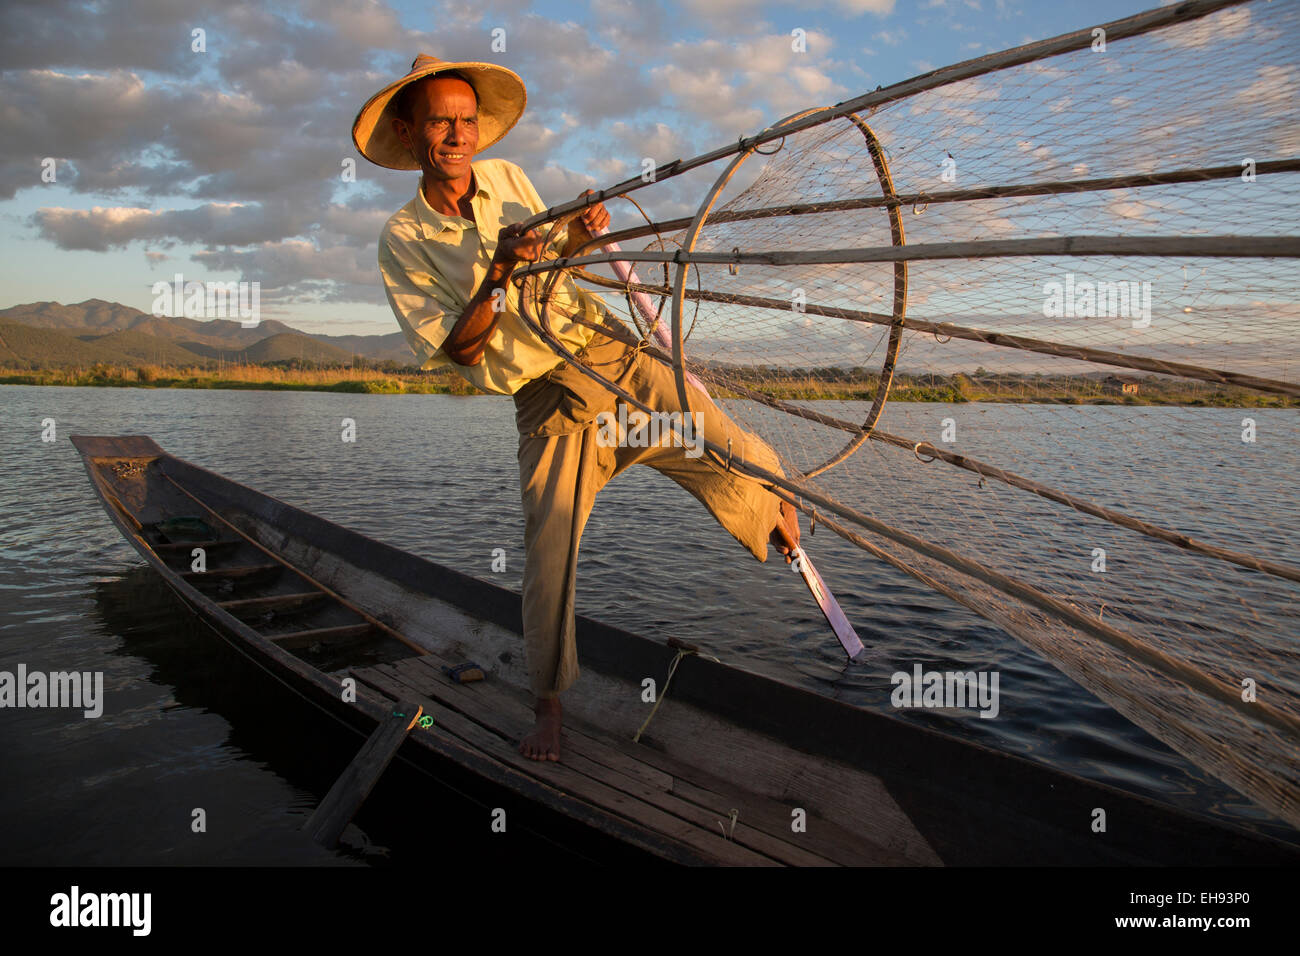 Shan Fisherman, Inle Lake, Myanmar Stock Photo